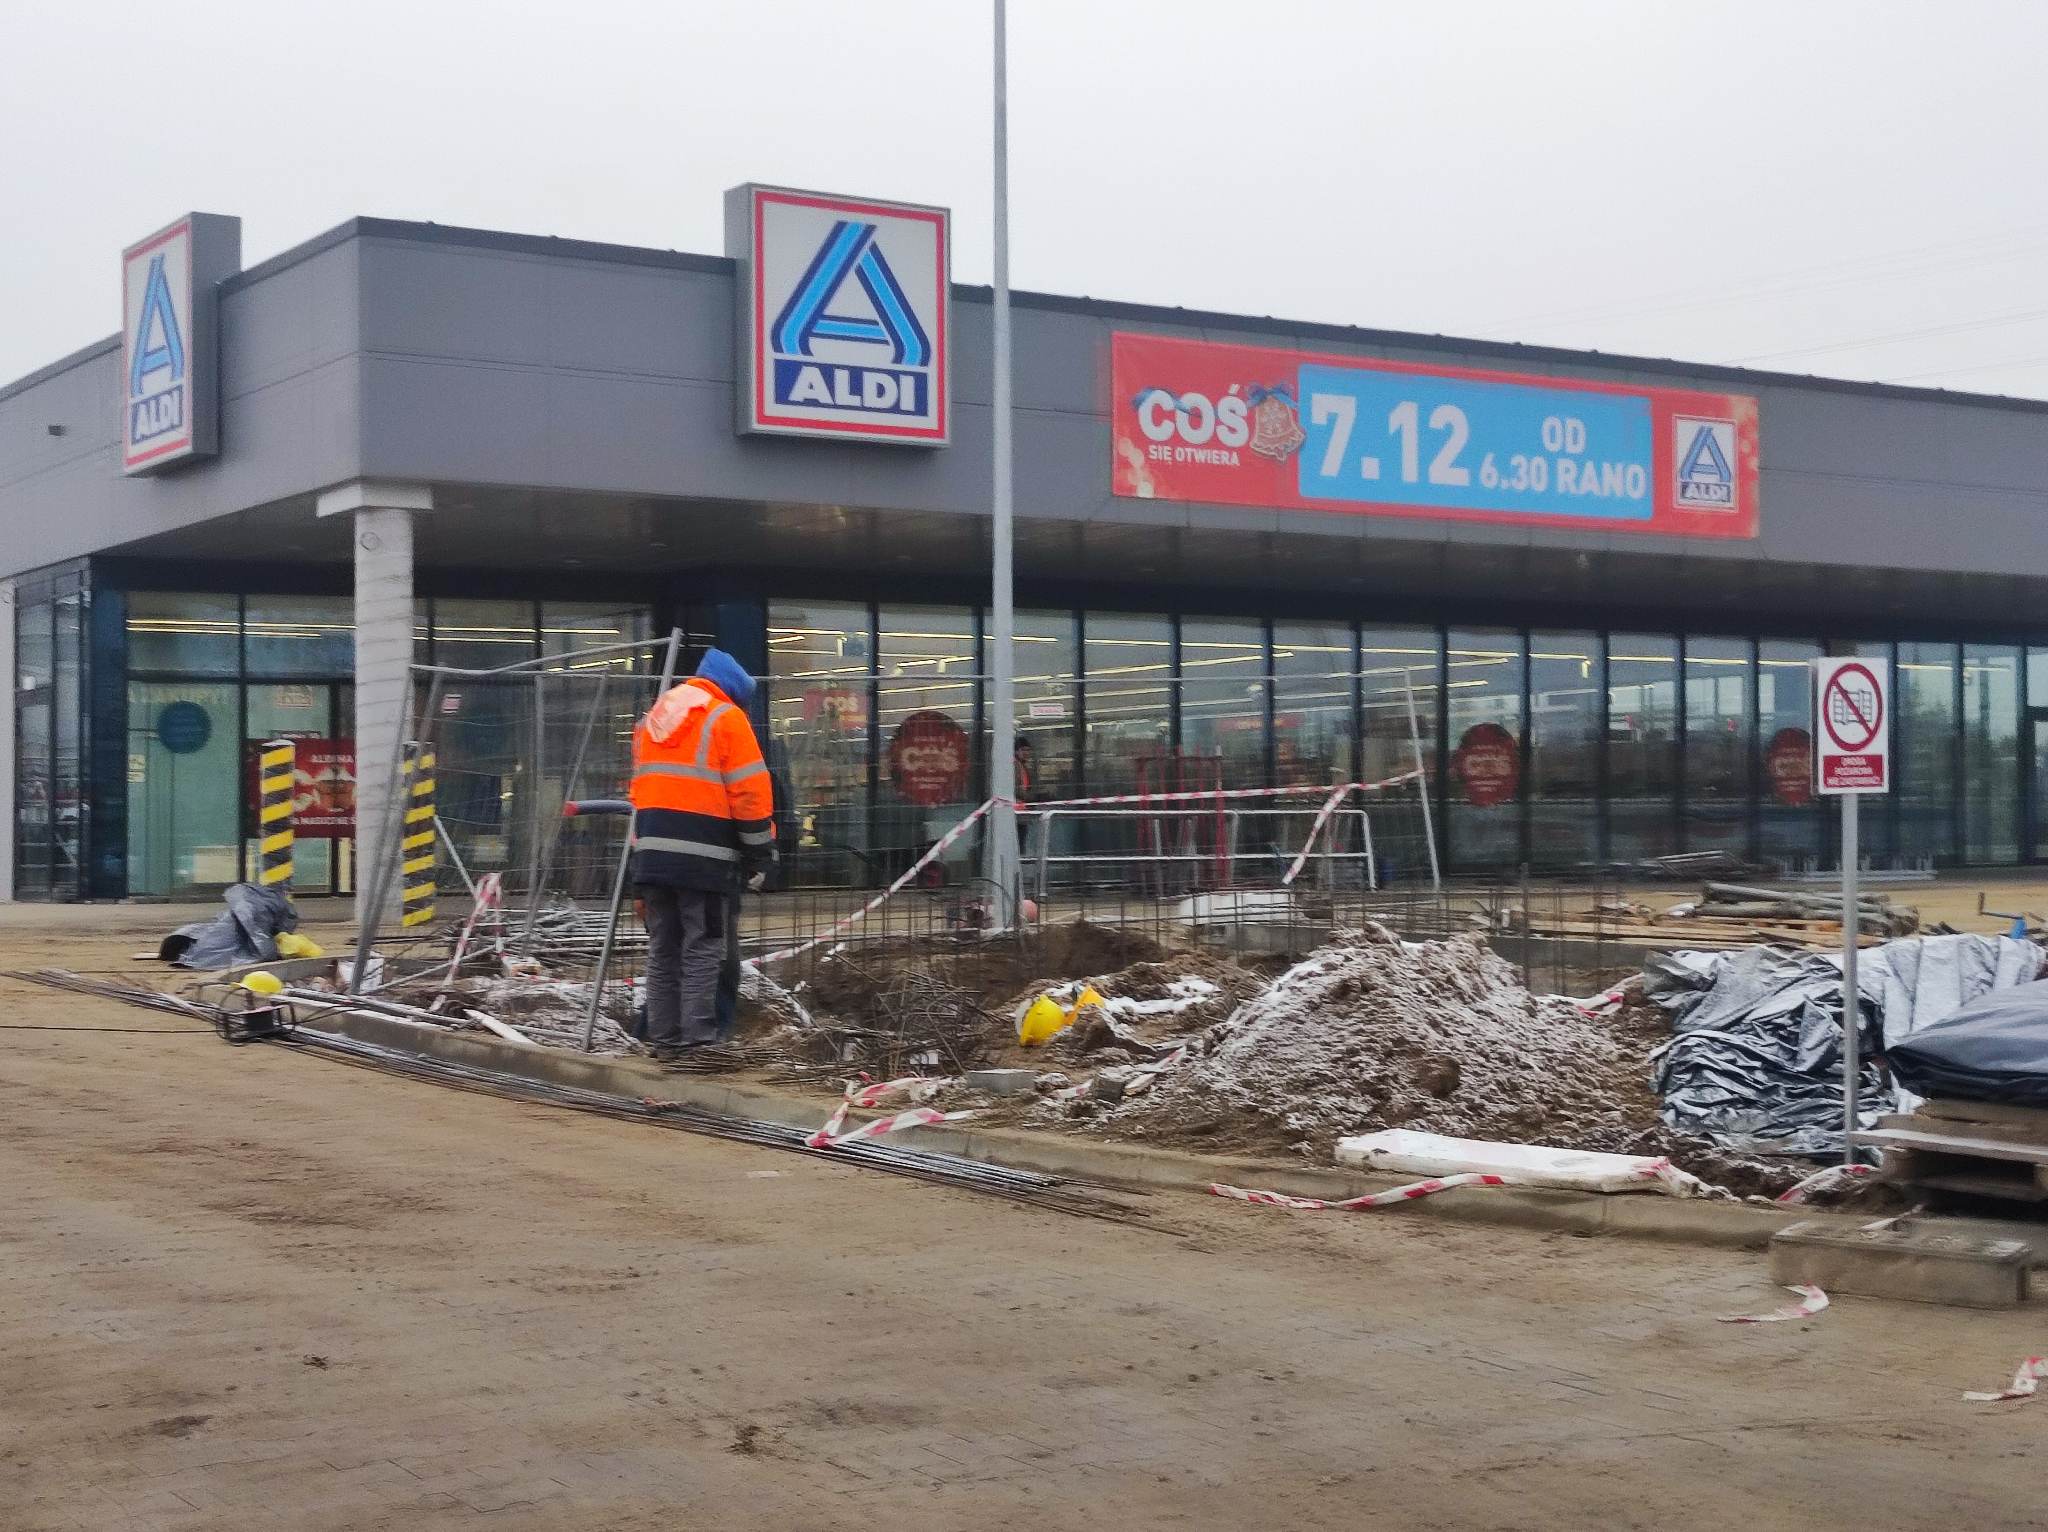 Dopiero otworzyli sklep w Świdniku, szykują się do otwarcia kolejnego w Lublinie. Chcą mieć tysiąc marketów (zdjęcia)